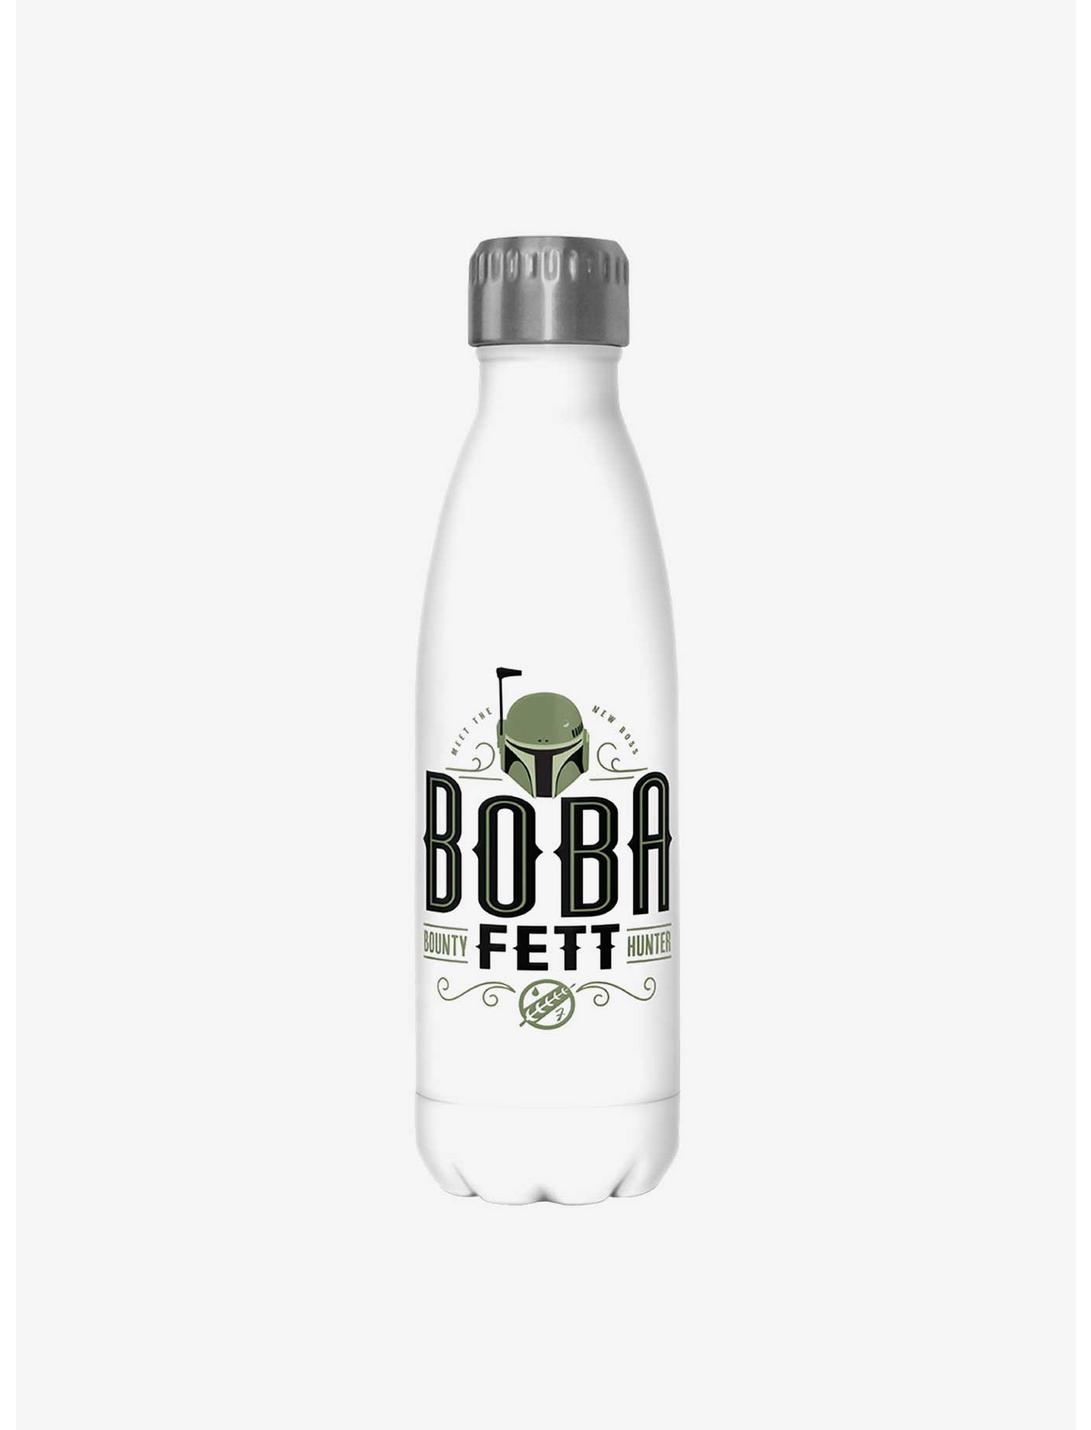 Star Wars The Book of Boba Fett Boba Fett Bounty Hunter White Stainless Steel Water Bottle, , hi-res